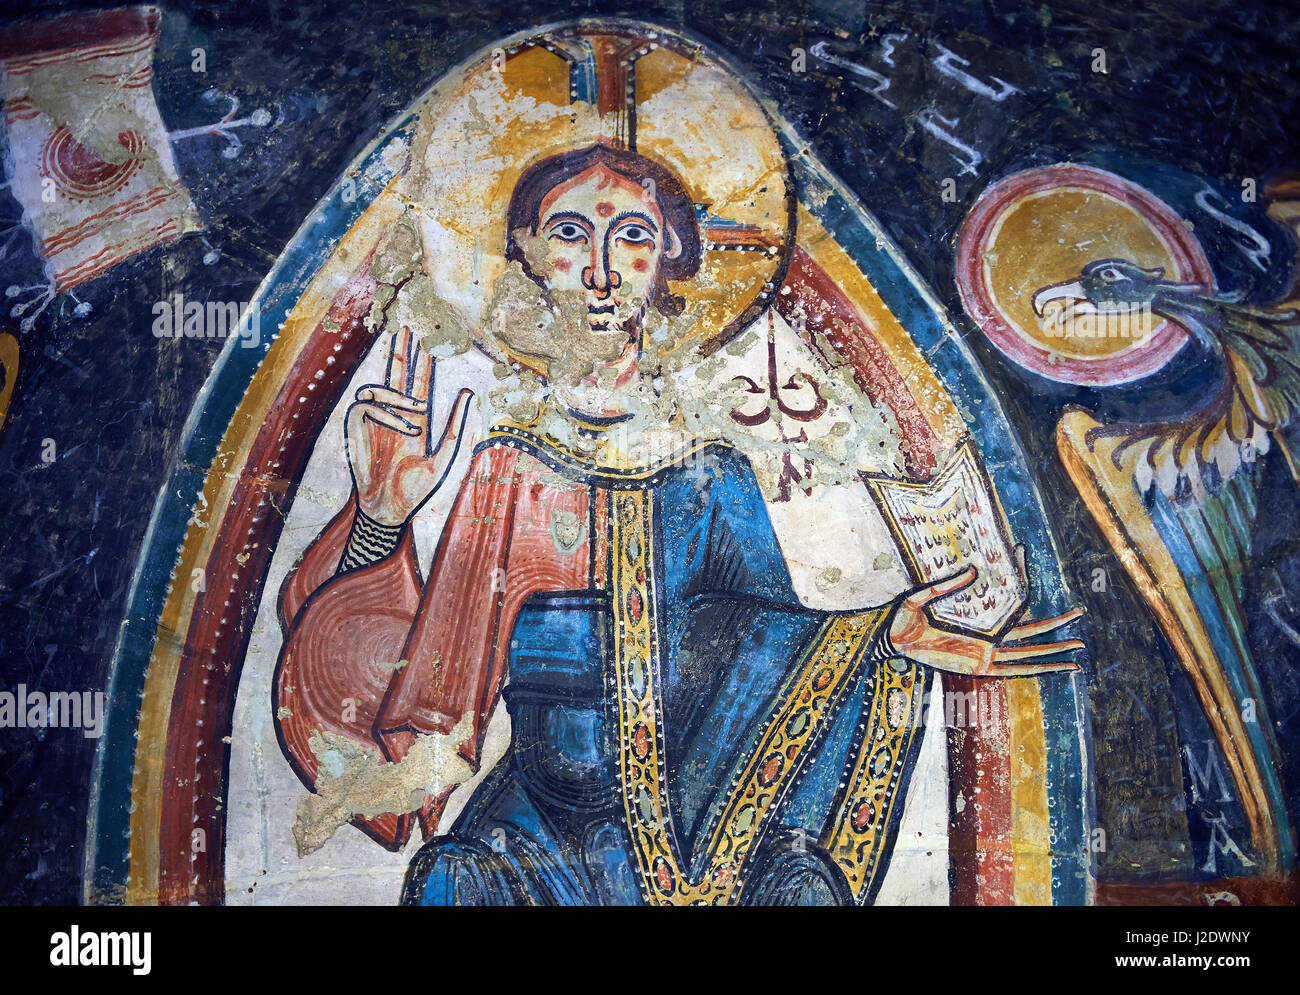 Romanische Fresken Darstellung Christus Pantokrator aus der Kirche von Sant Miguel d'Engolasters, Les Escaldes Andorra... Malte etwa 1160. Nationale A Stockfoto